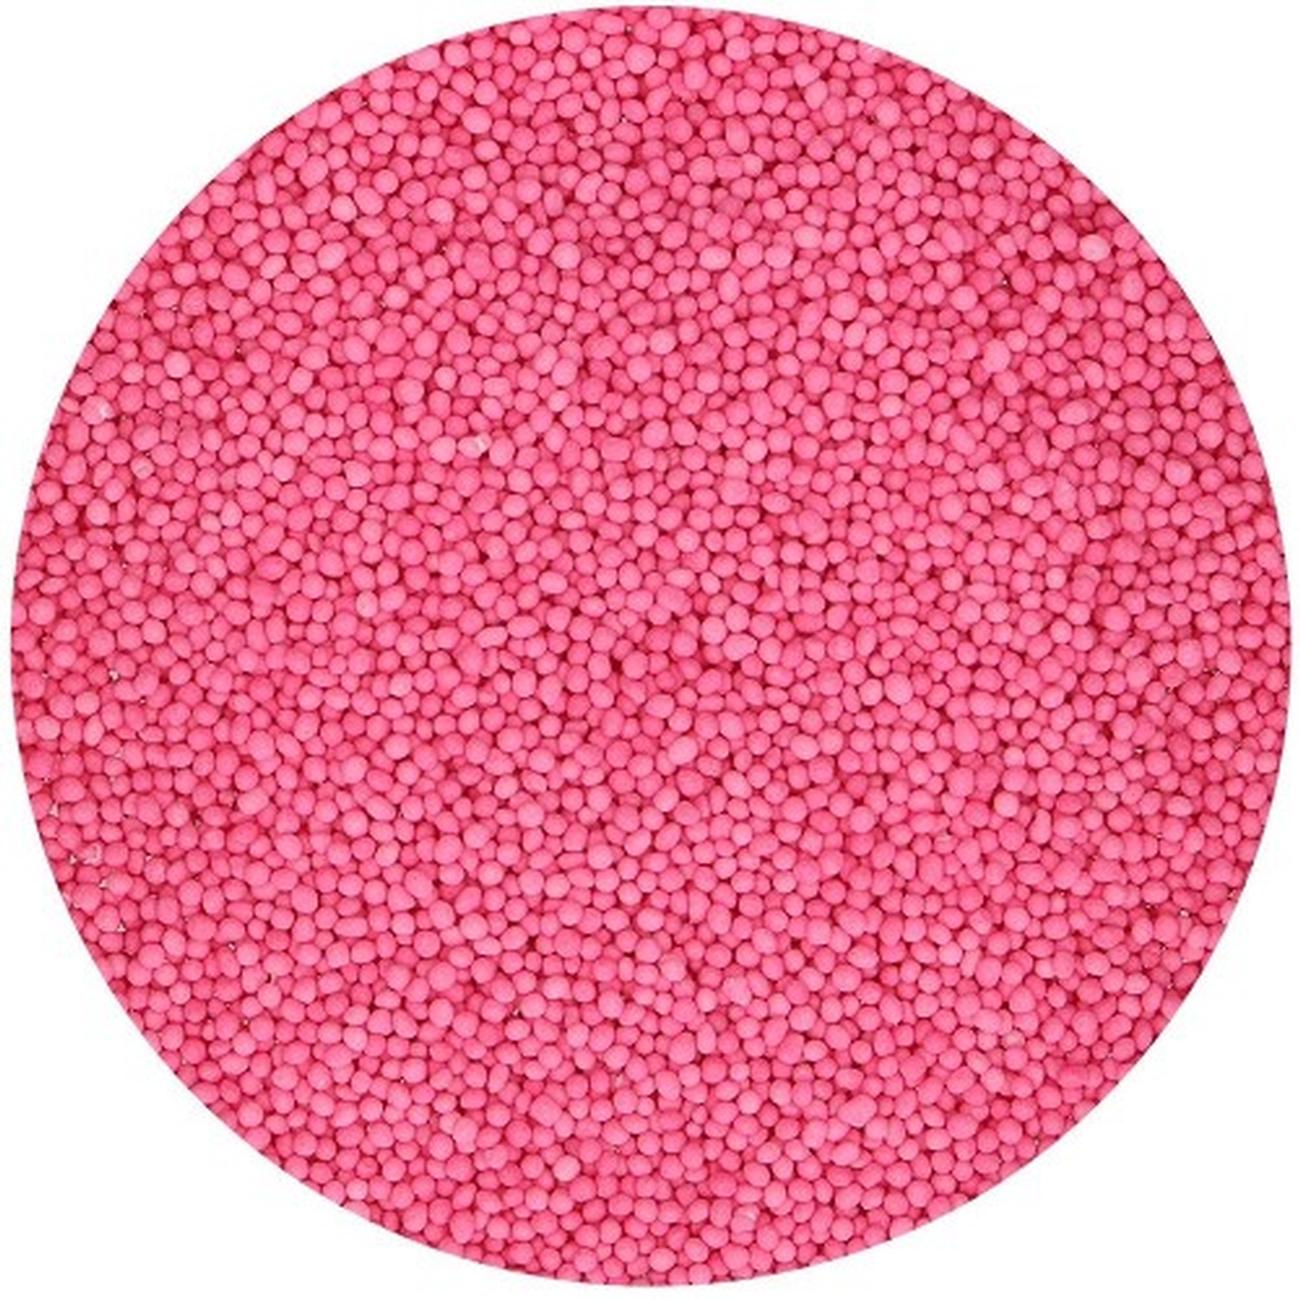 fun-cakes-nonpareils-edible-sprinkles-dark-pink-80g - FunCakes Nonpareils Edible Sprinkles Dark Pink 80g